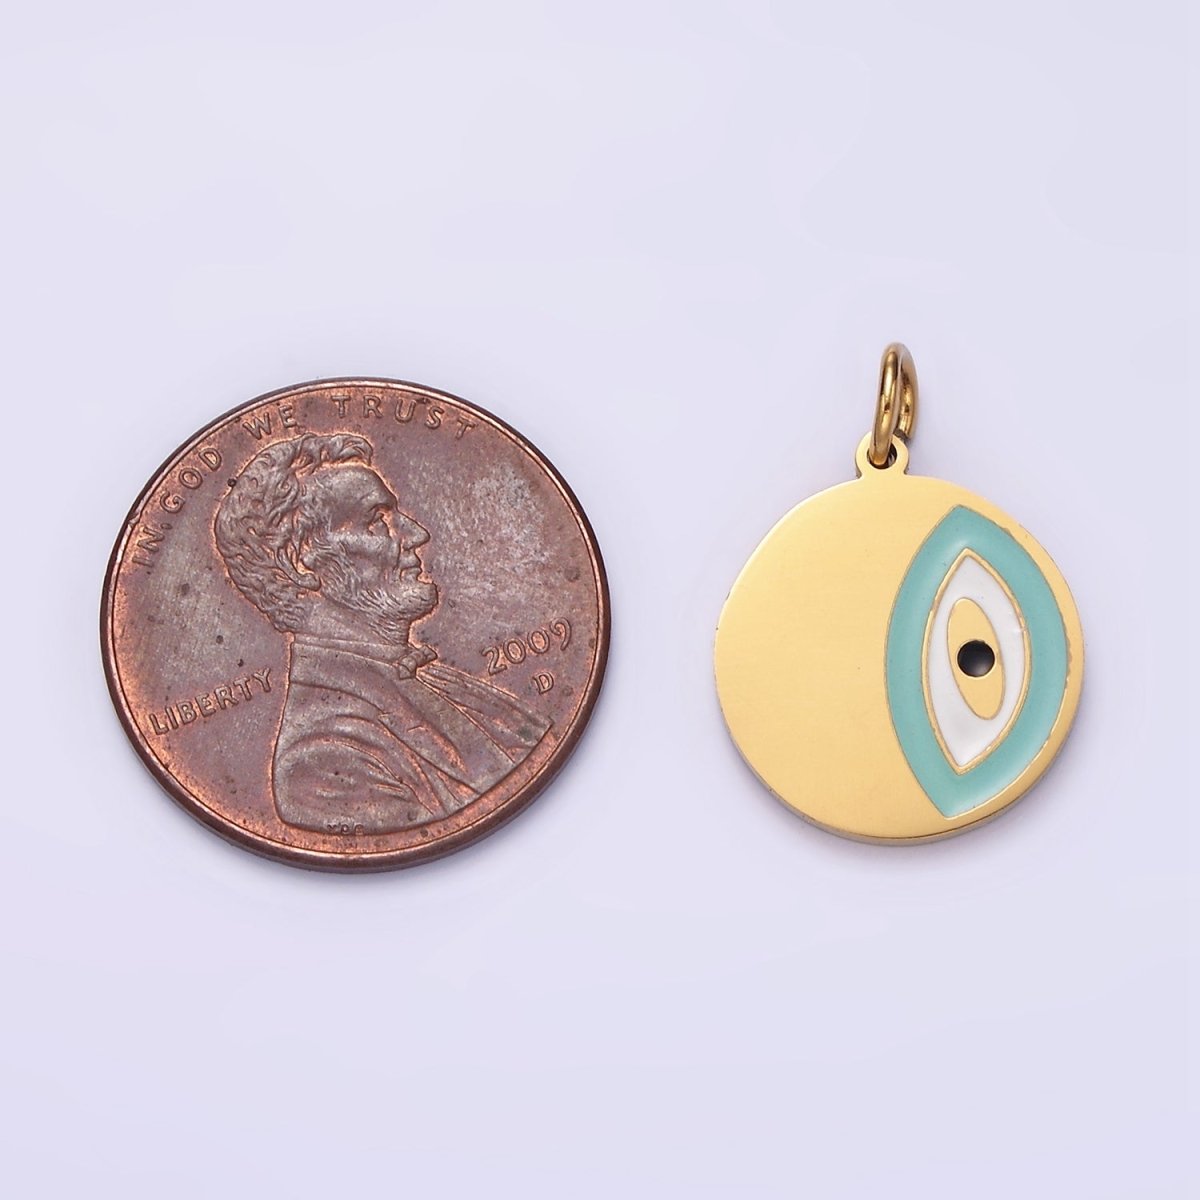 Stainless Steel Coin Charm Evil Eye Pendant Teal Enamel Medallion Charm | P-656 - DLUXCA